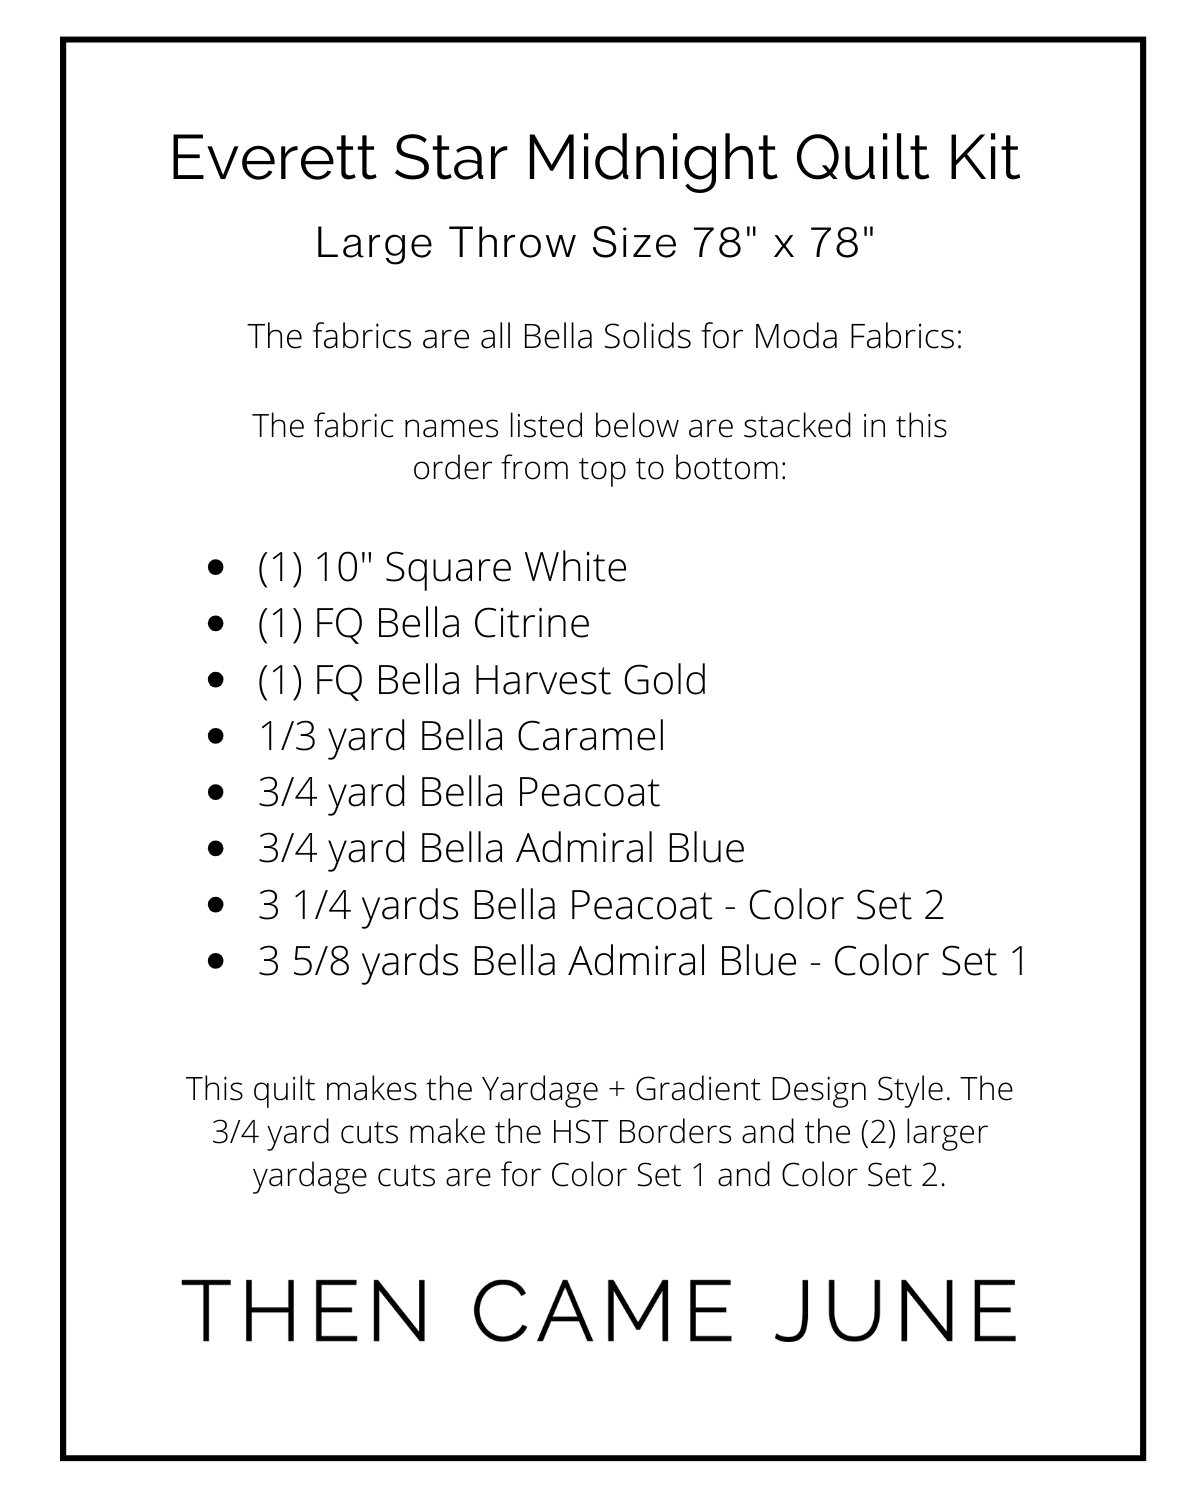 Everett Star Quilt Kits - Midnight